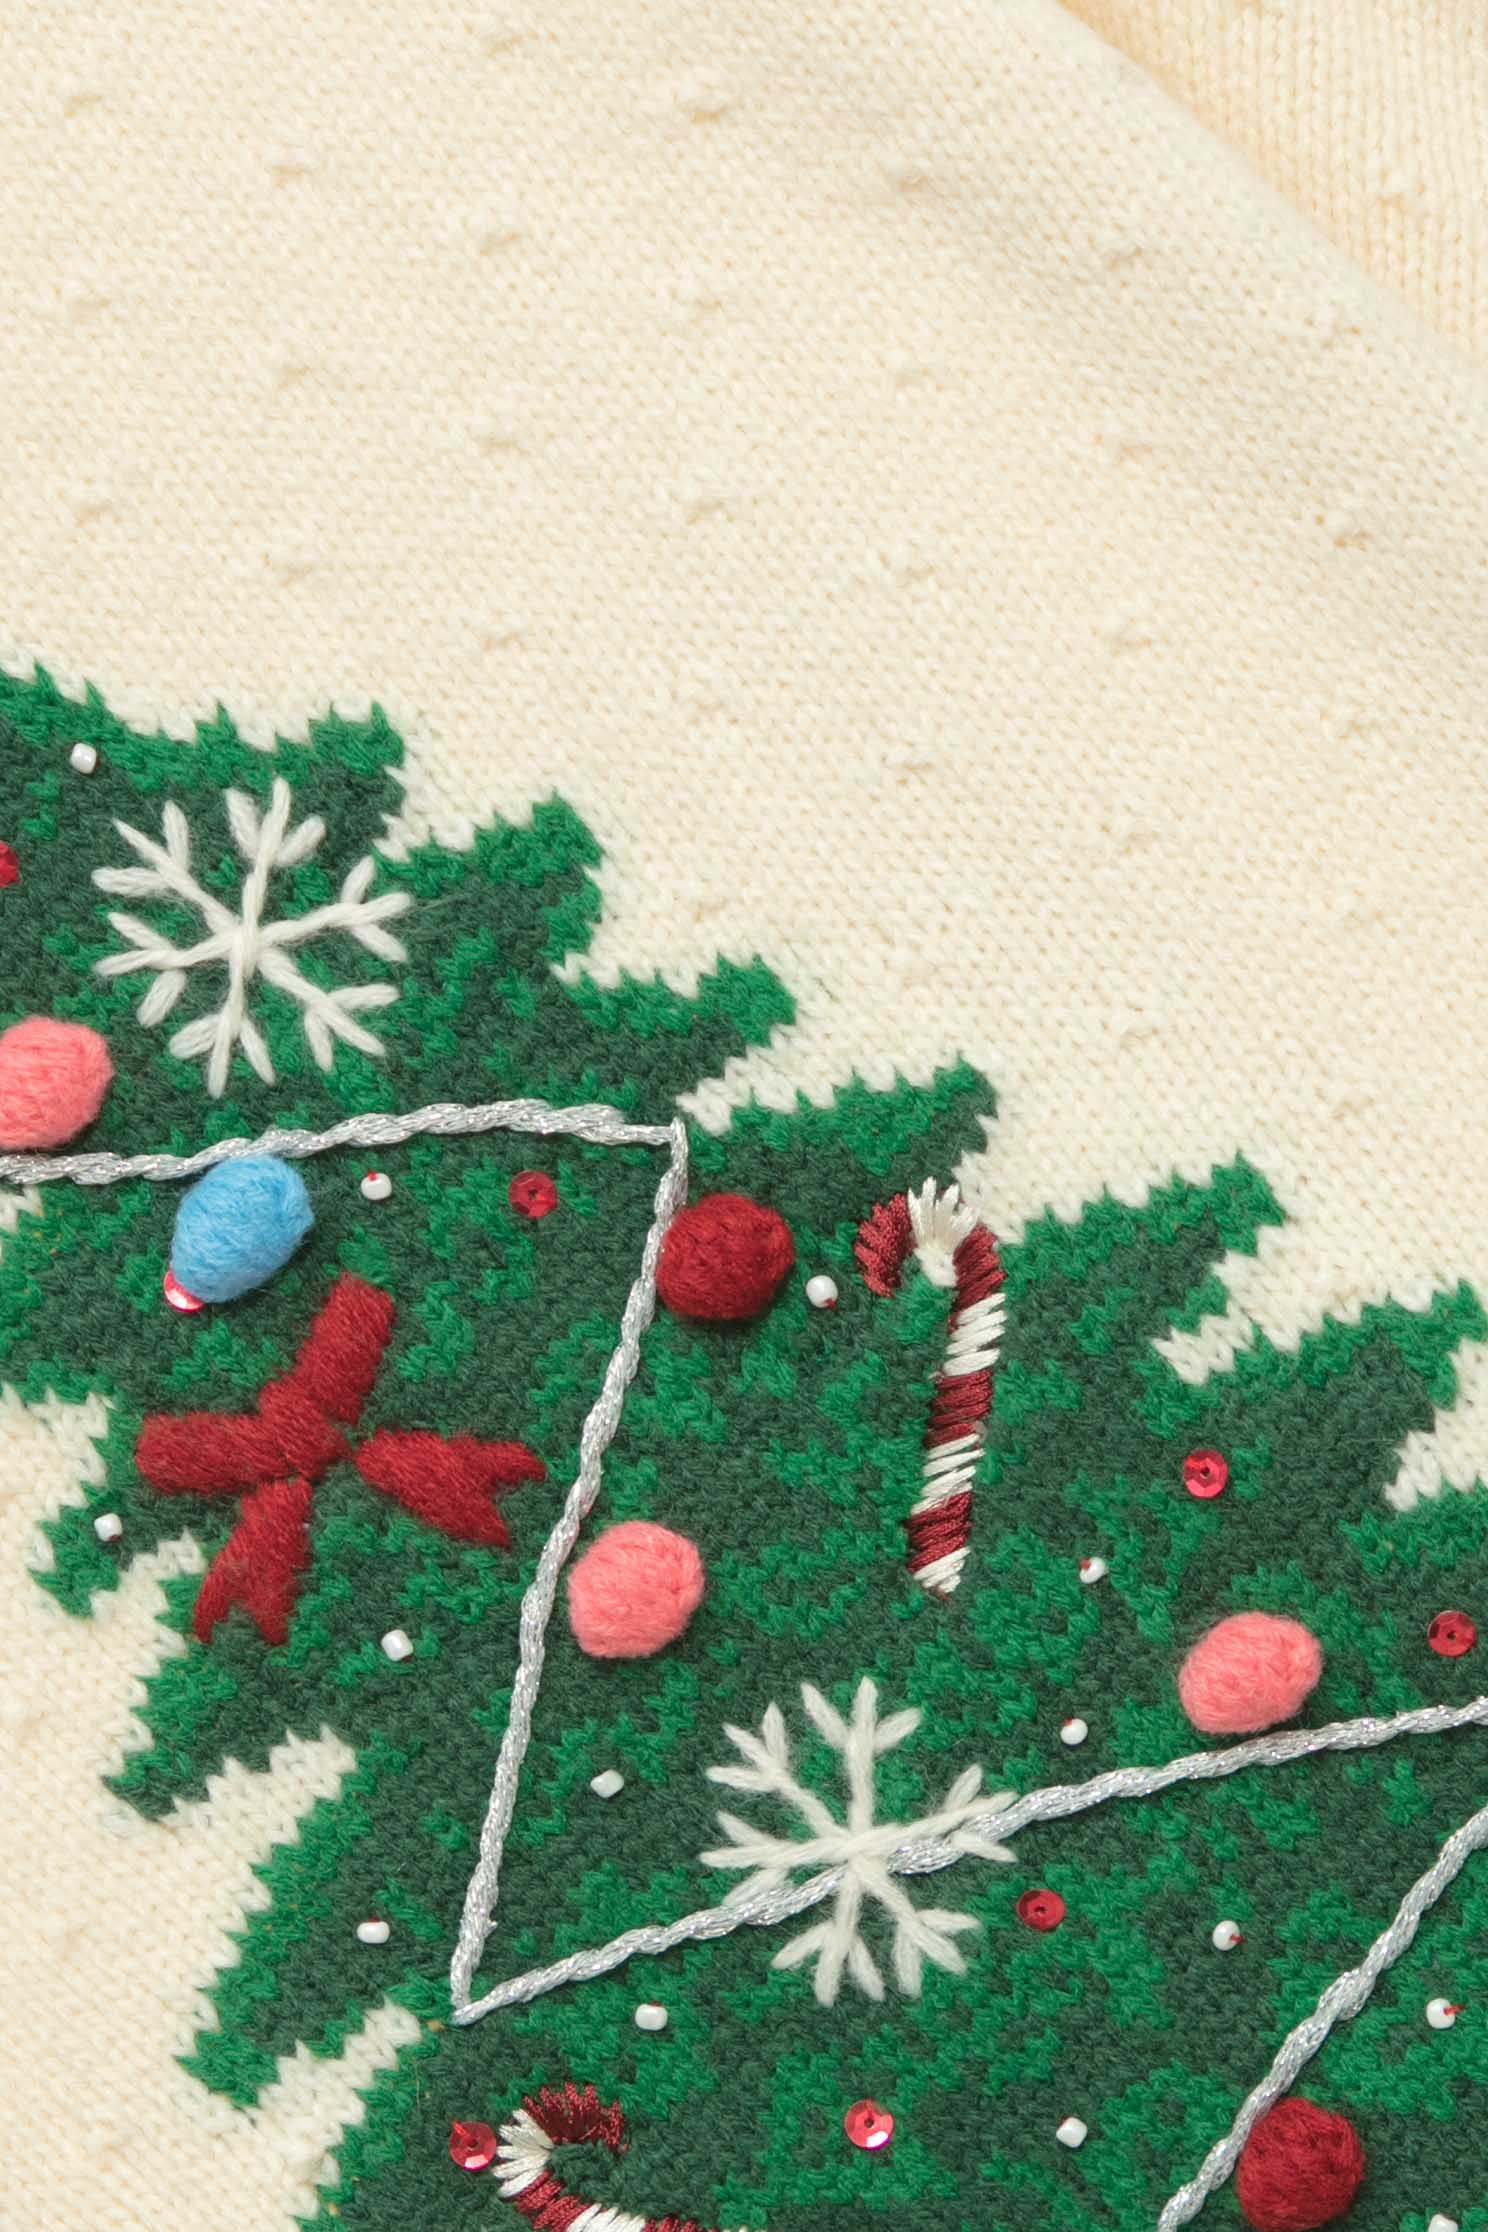 聖誕樹針織上衣聖誕樹針織上衣,上衣,秋冬穿搭,針織,針織上衣,針織衫